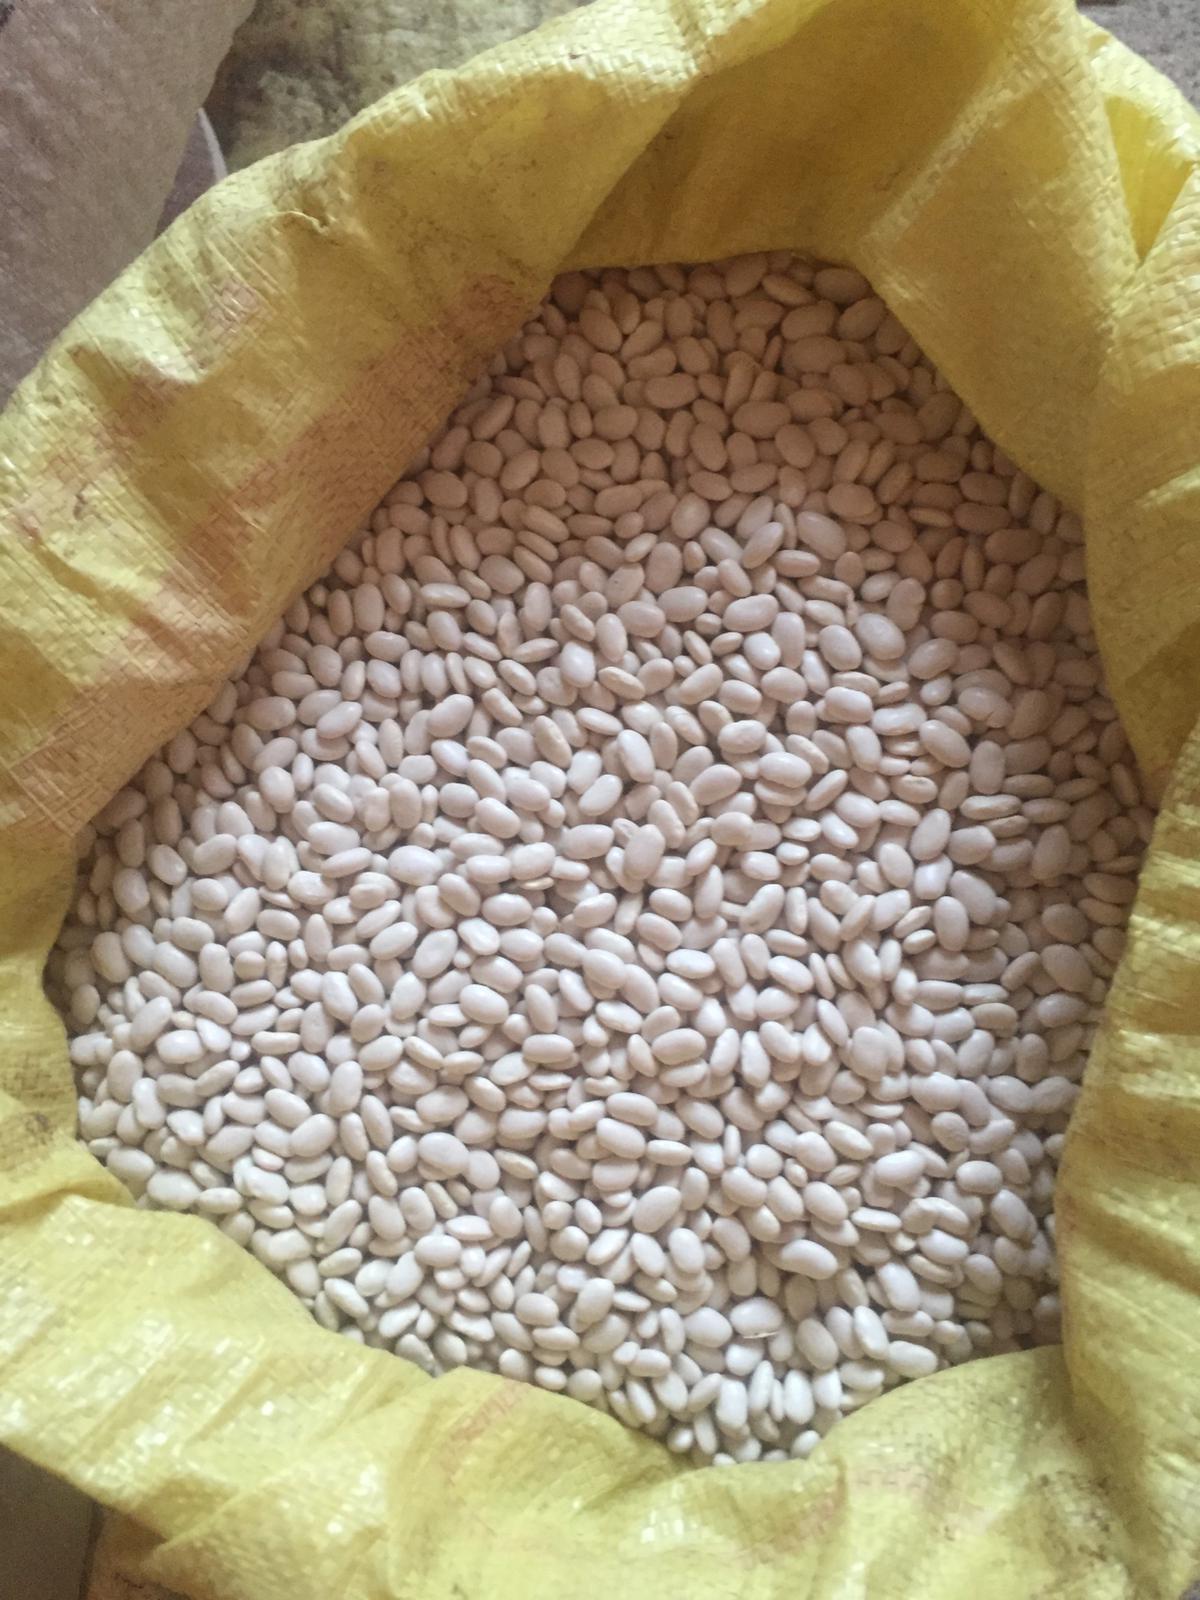 Kuru Fasulye - Üretici murat demir 20 tl fiyat ile 500 kilogram kuru fasulye  satmak istiyor